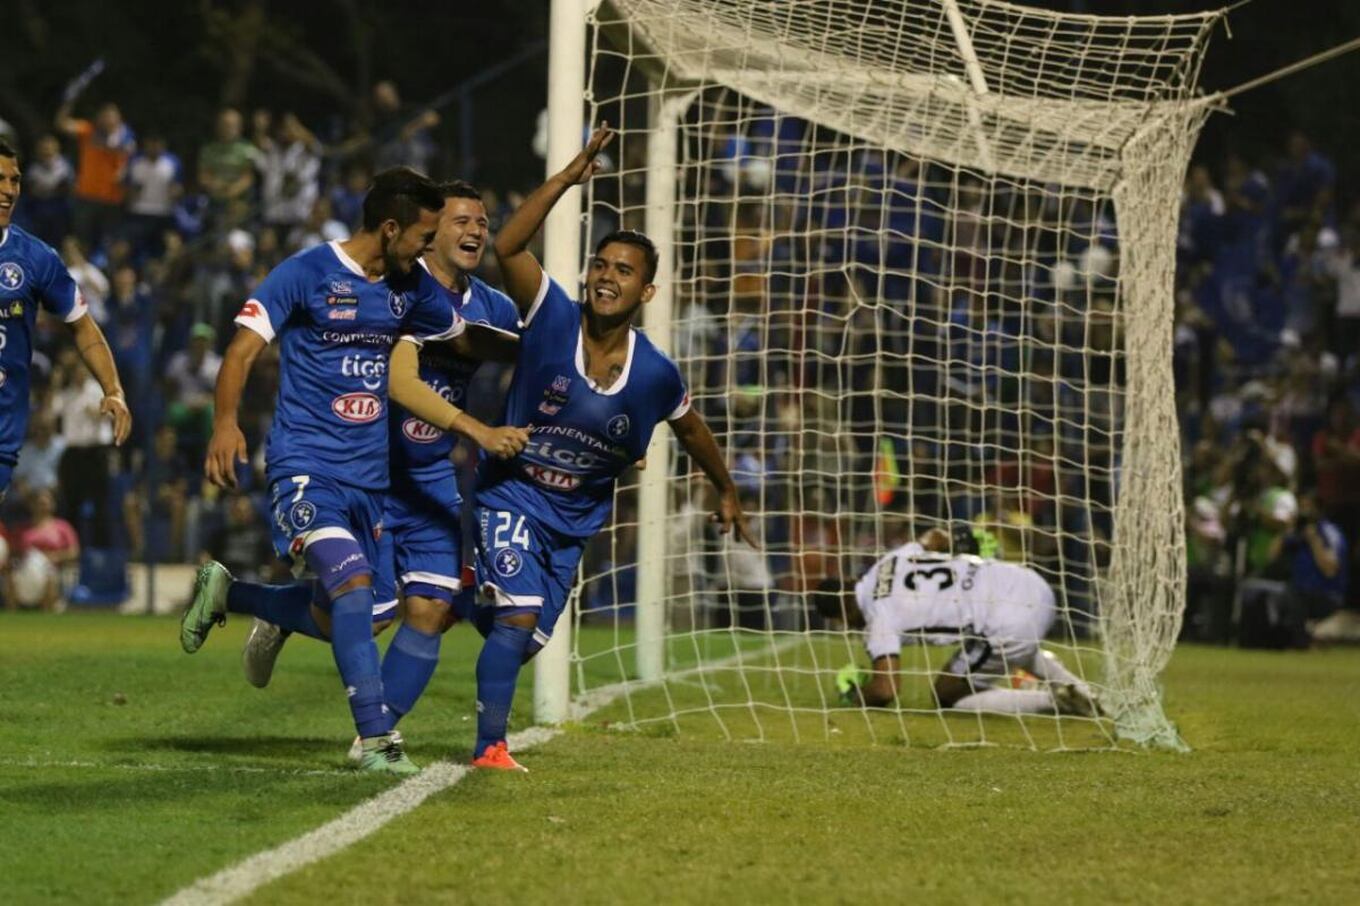 Vino la luz y Yonathan Samaniego sacudió la red y festeja su gol con los compañeros. Foto: Néstor Soto